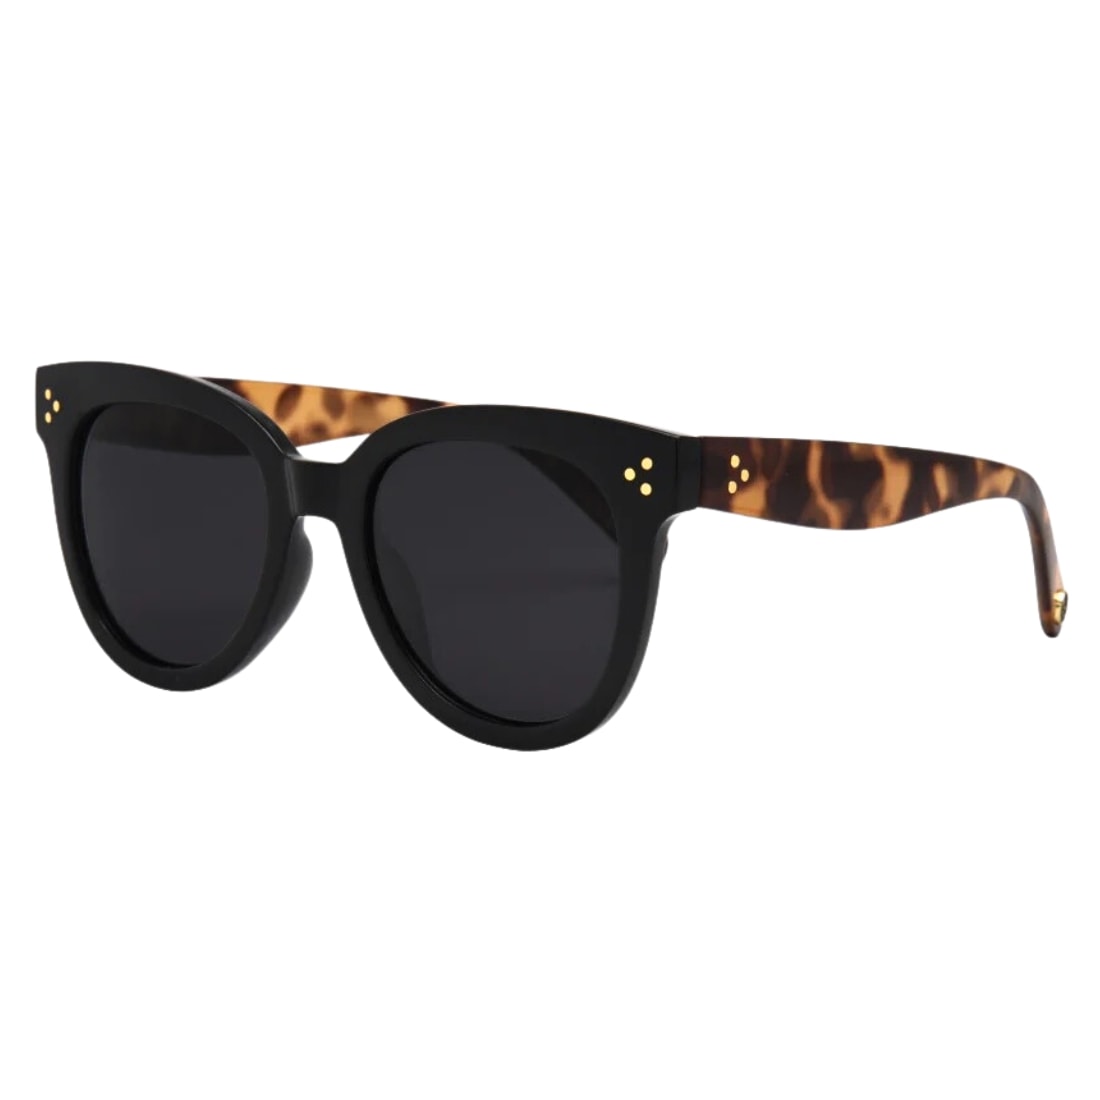 I-Sea Cleo Rounded Cat Eye Polarised Sunglasses - Black/Smoke Polarized Lens - Cat Eye Sunglasses by I-Sea